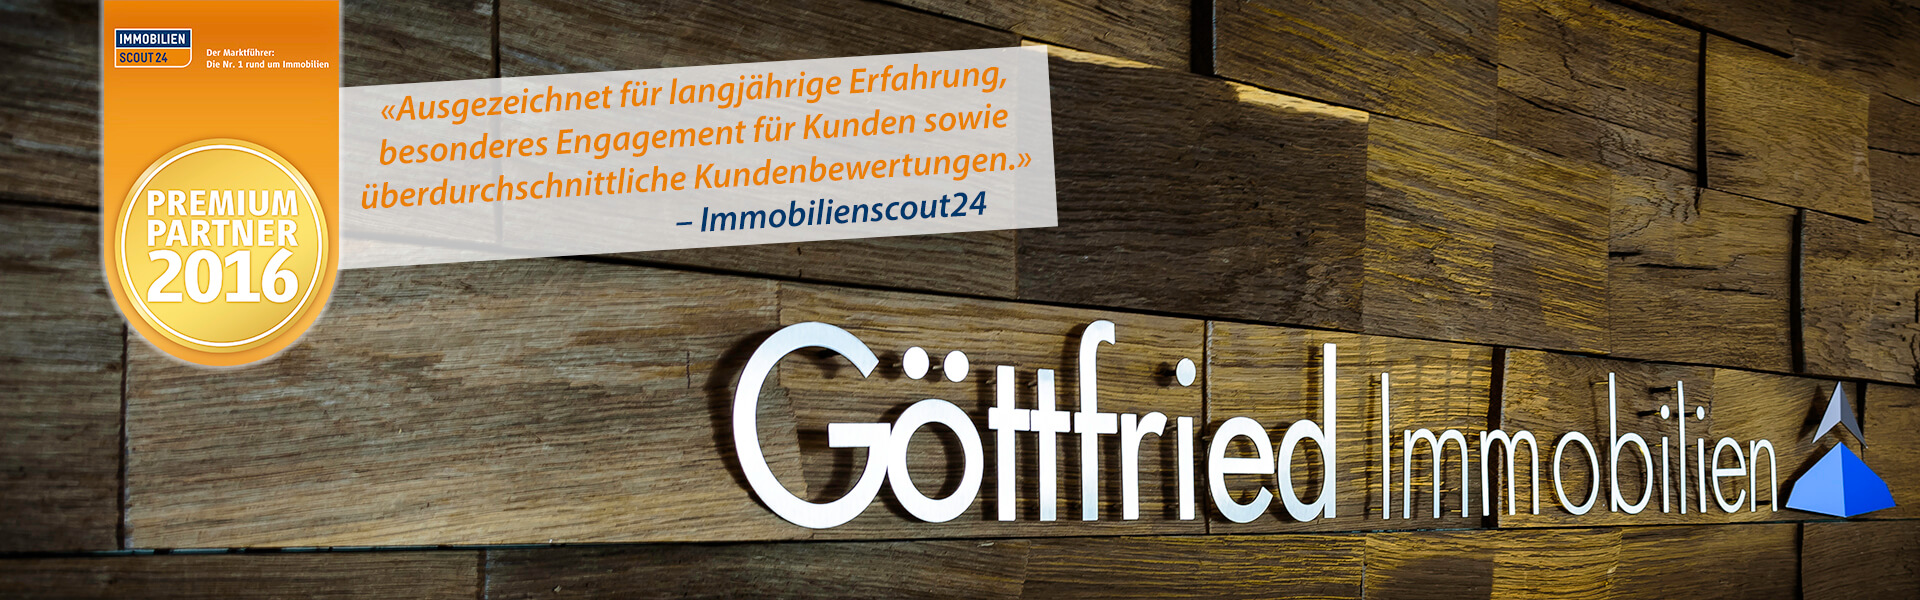 Fotos - Göttfried Immobilien GmbH - 4